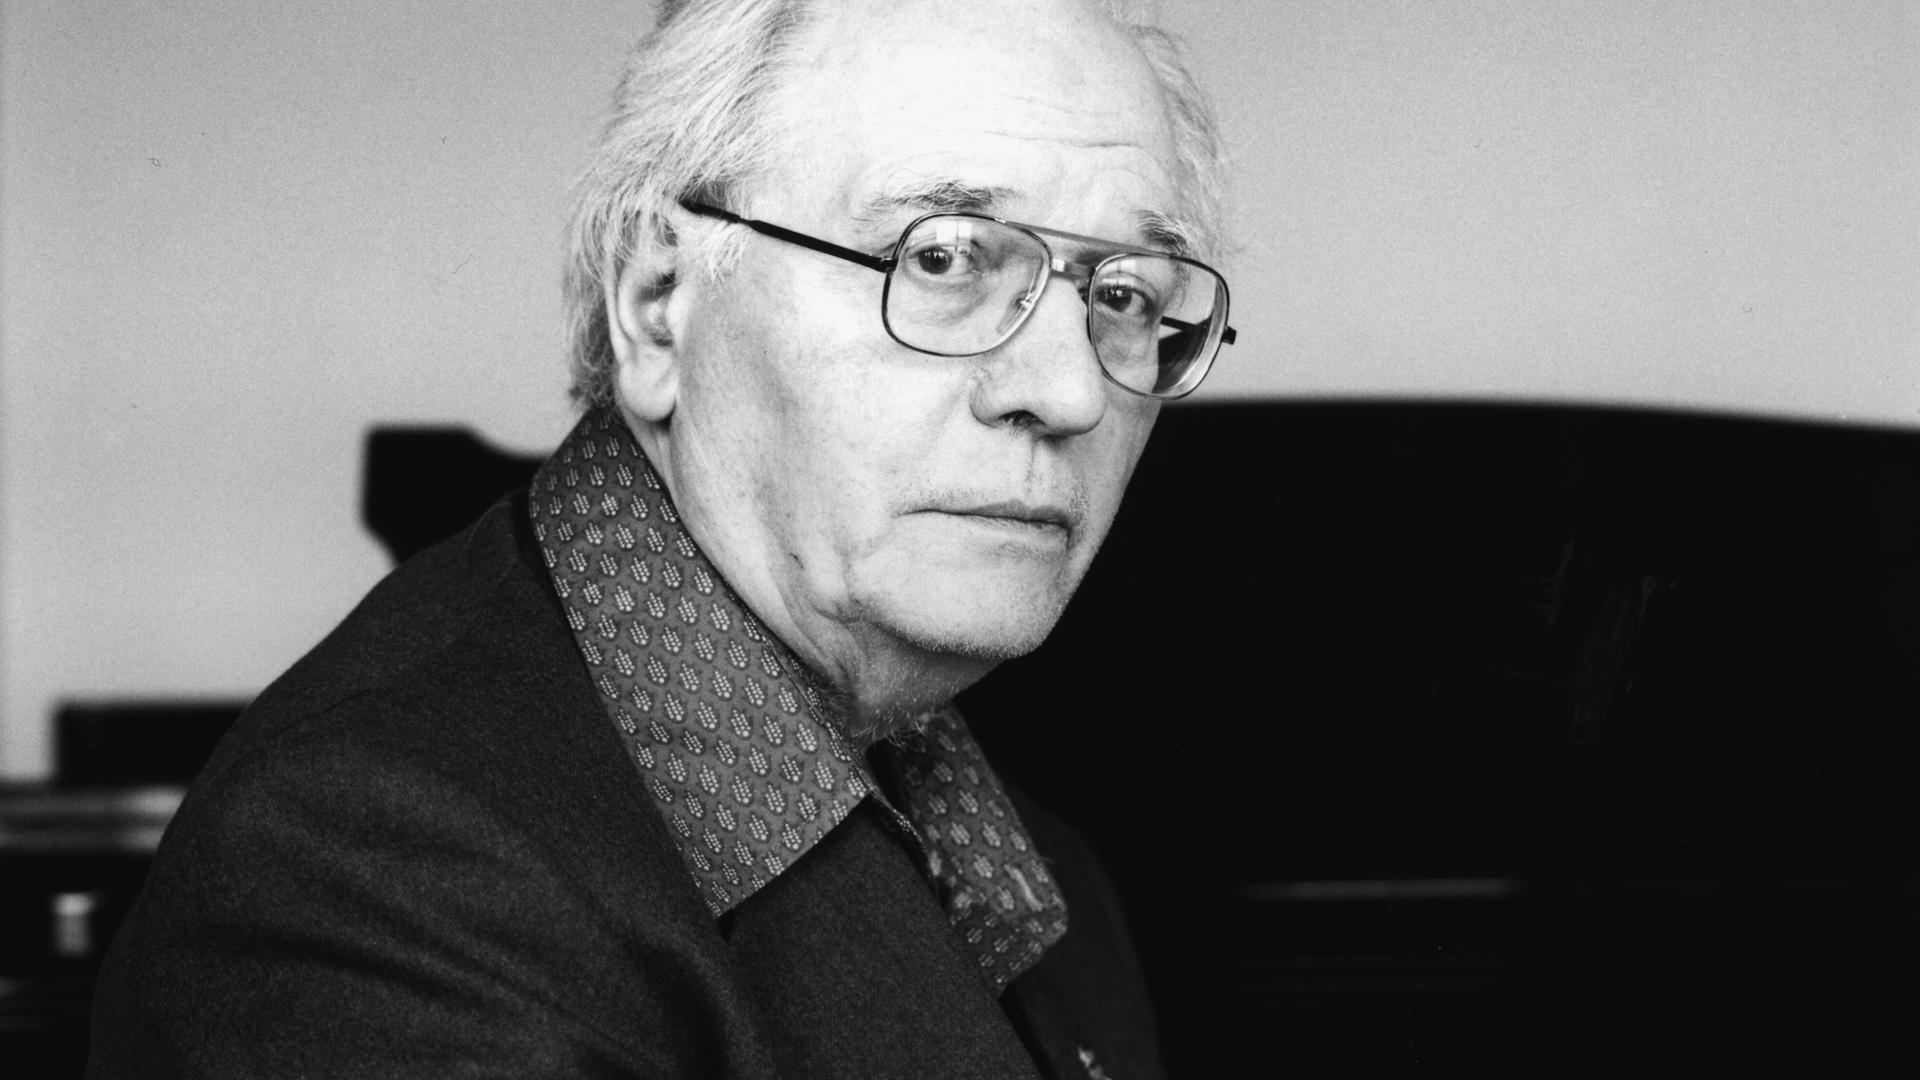 Olivier Messiaen blickt ernst durch seine Brille direkt in die Kamera, während er vor einem Flügel sitzt.